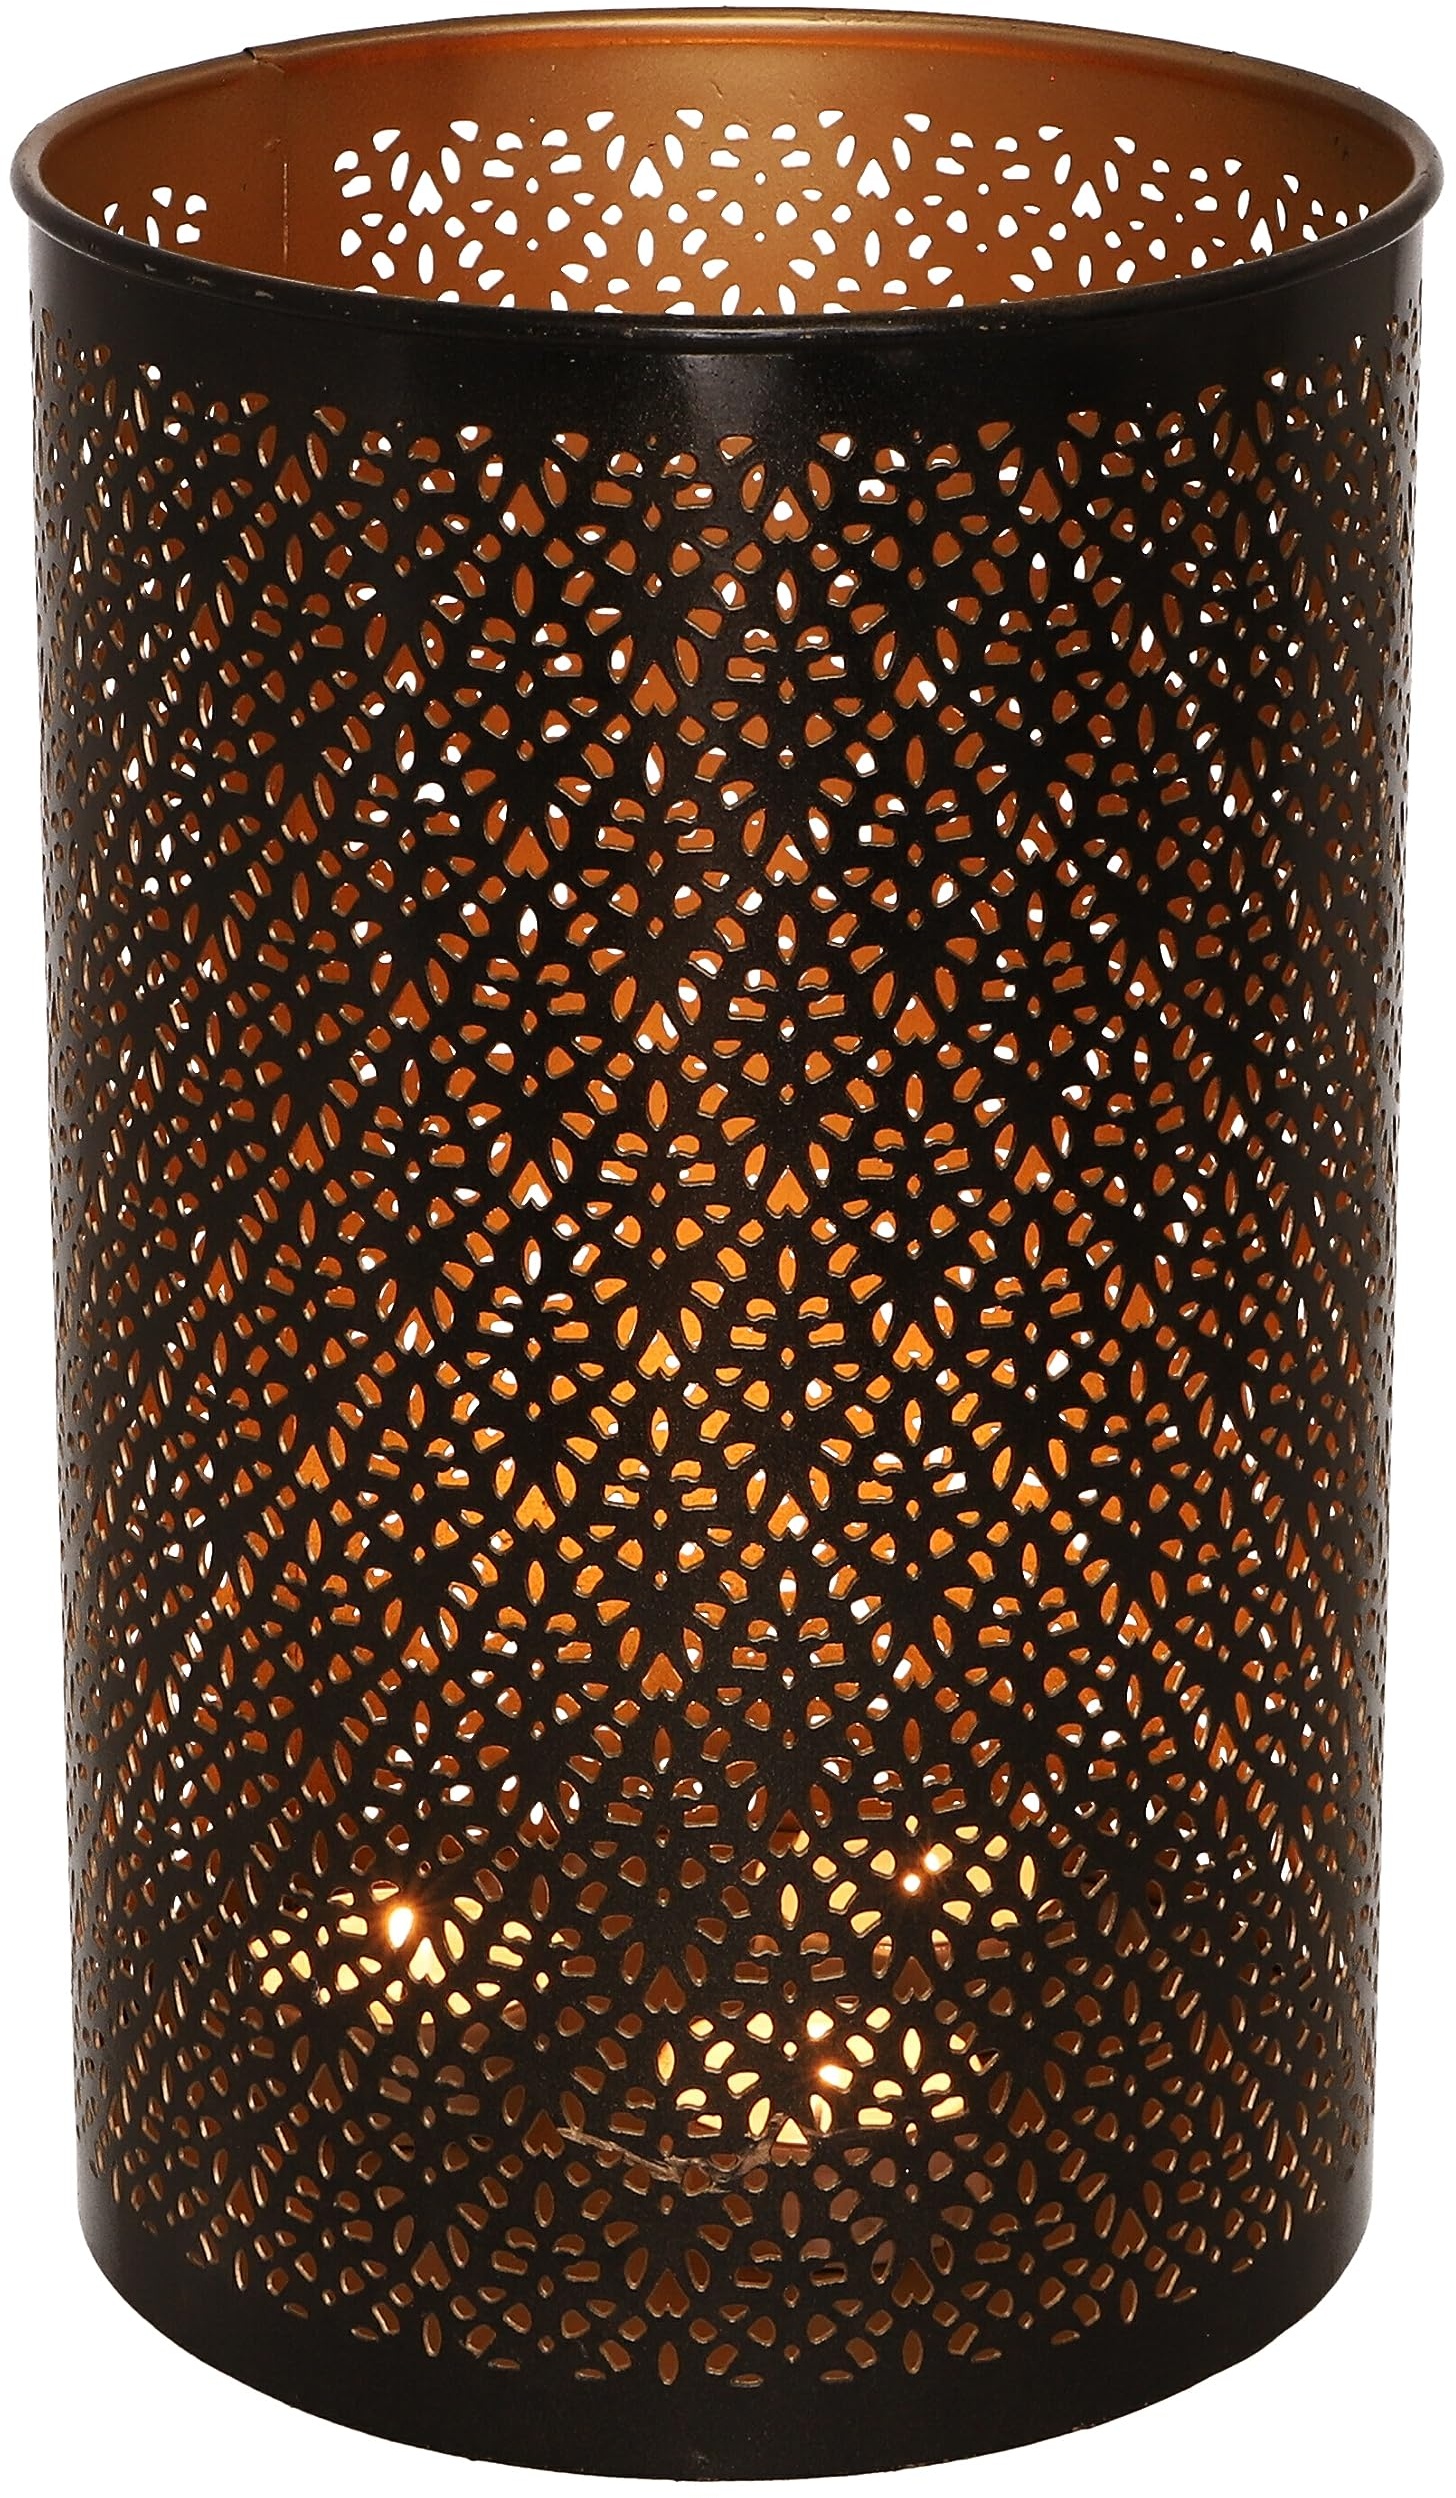 GURU SHOP Runde Metall Windlicht Leuchte, Passend für Teelicht Kerzen Oder als Deckenlampe Verwendbar - Modell 7, Braun, Größe: 16 cm, Teelichthalter & Kerzenhalter